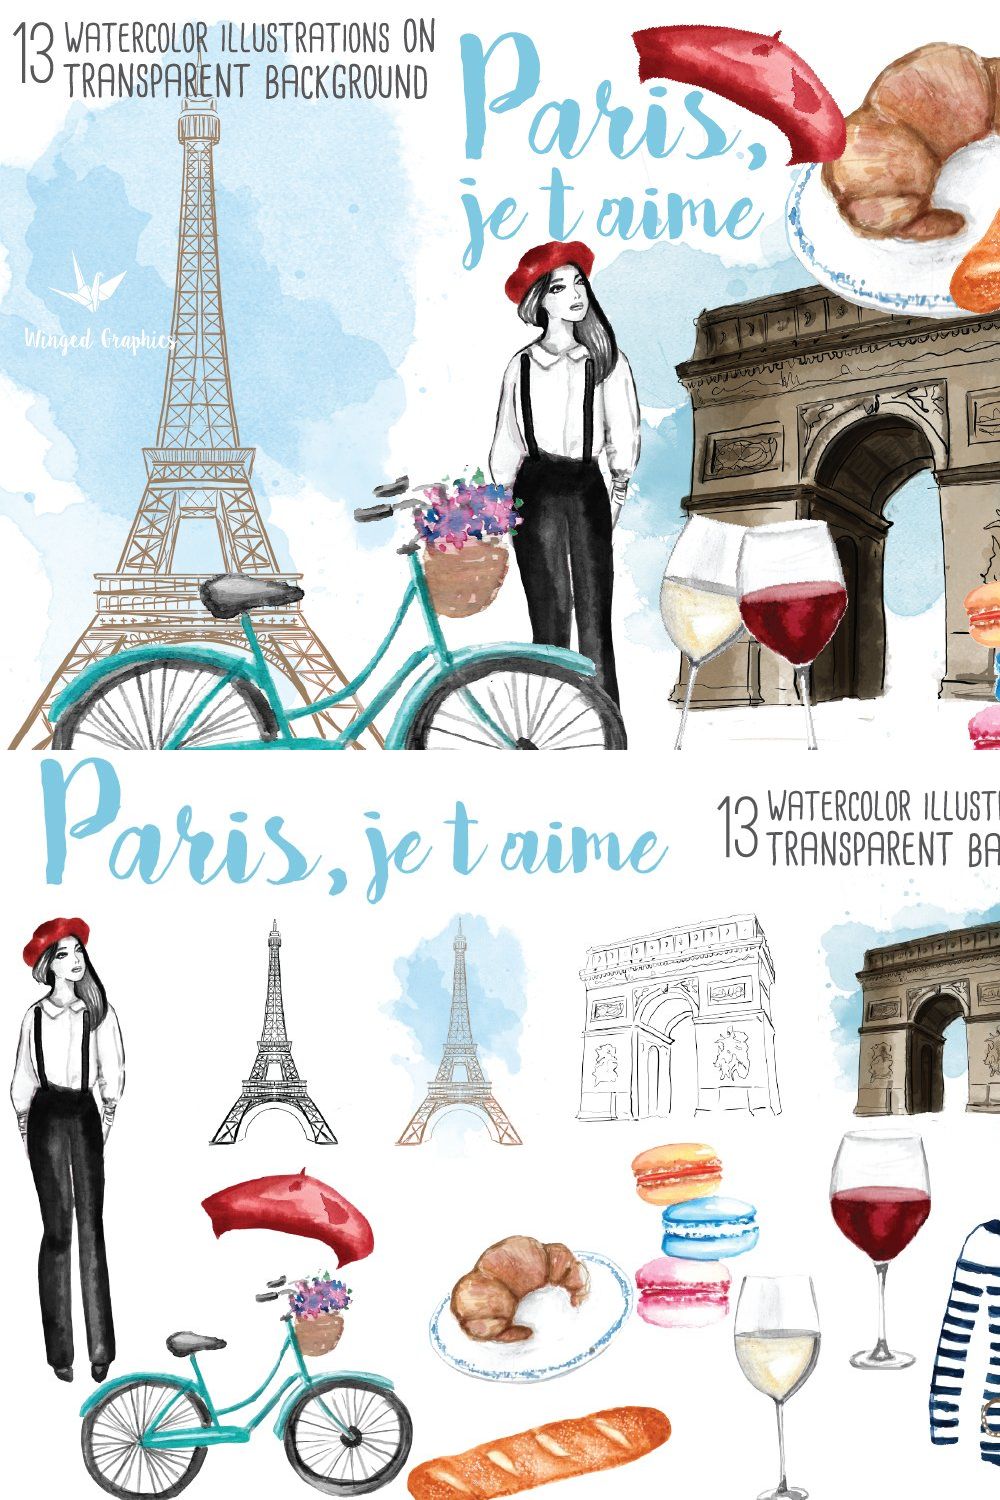 Paris/ France illustrations pinterest preview image.